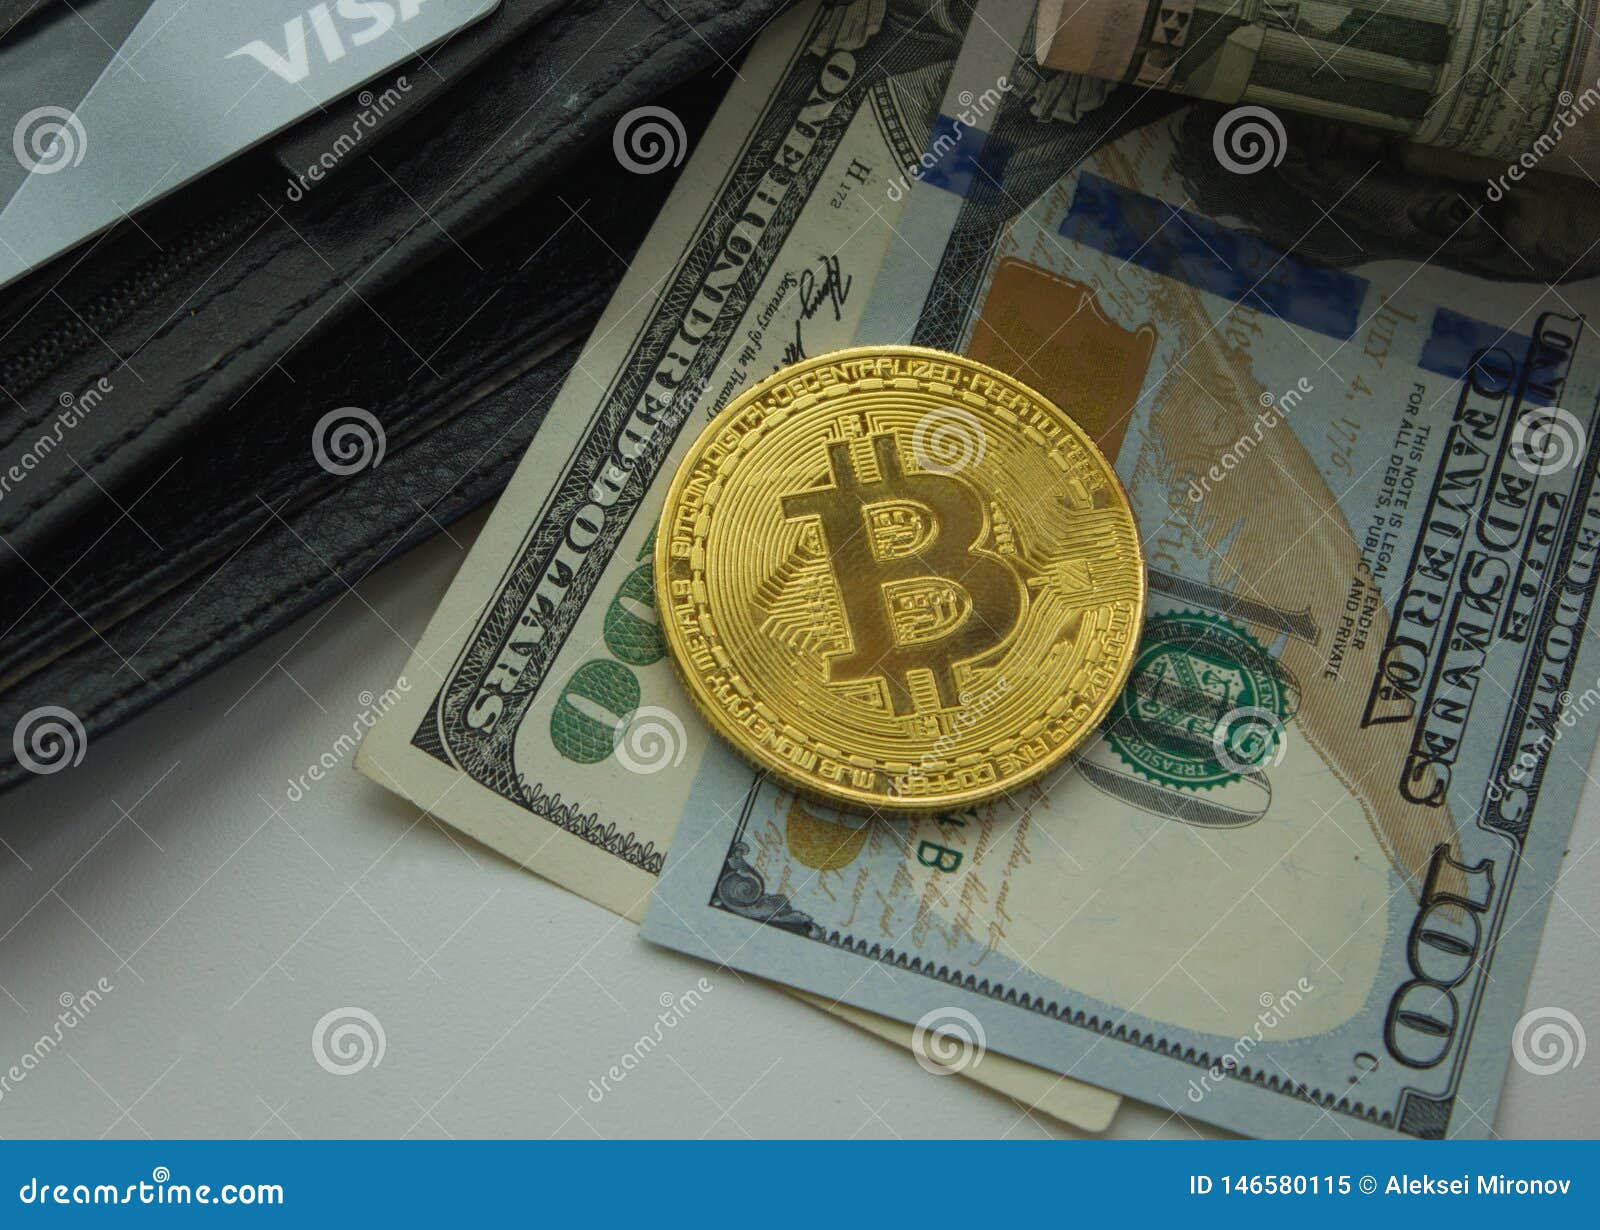 20 bitcoin to usd